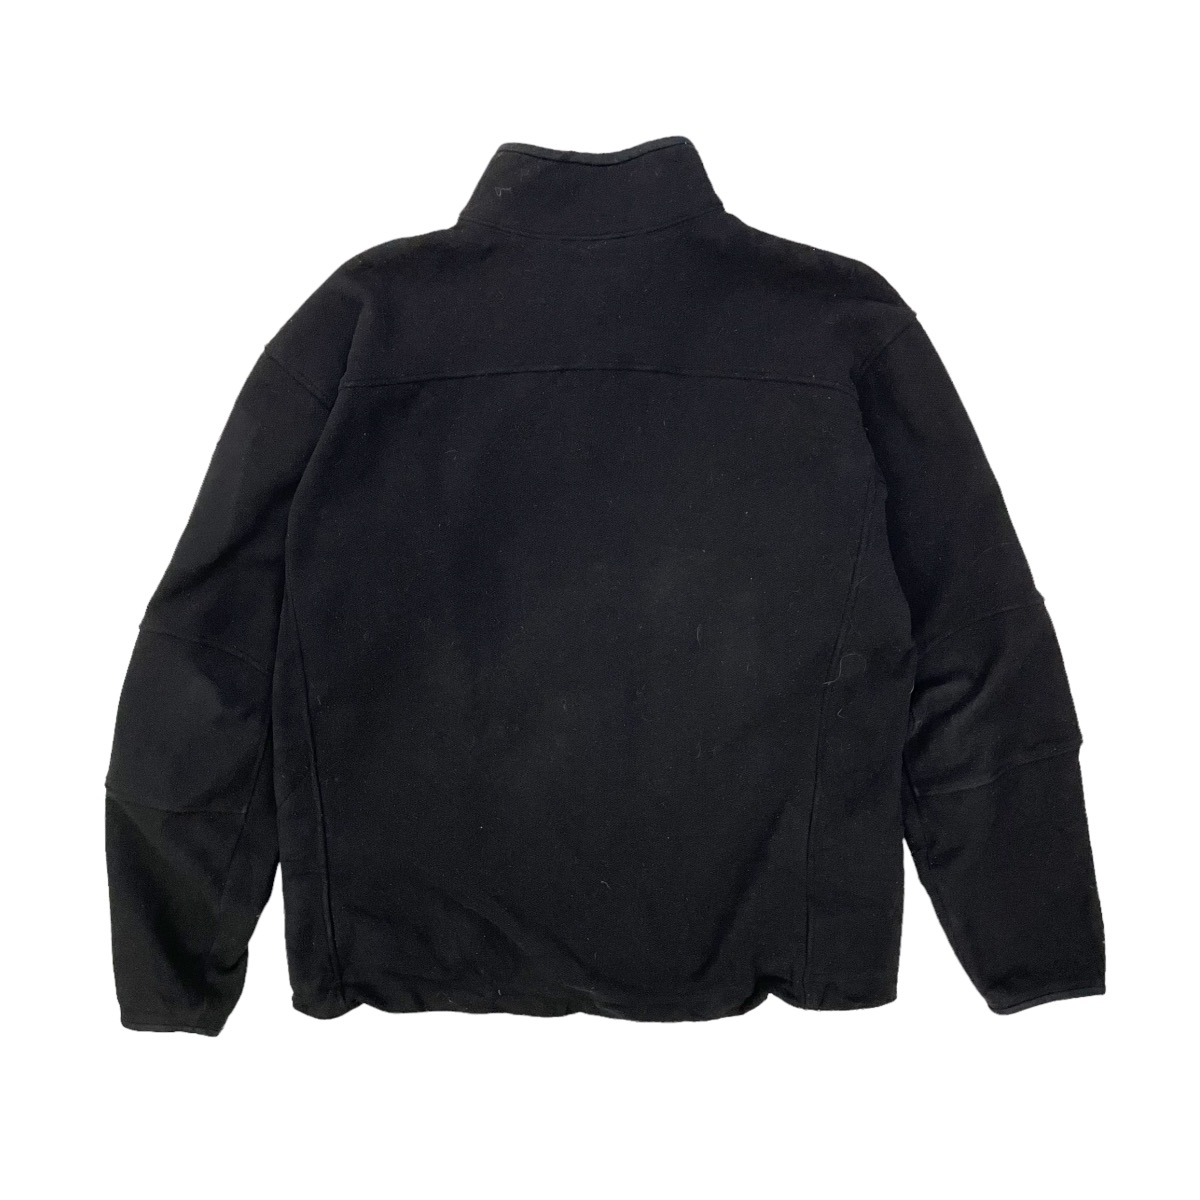 💥 Vintage Arcteryx Zipper Lined Fleece Jacket - 9